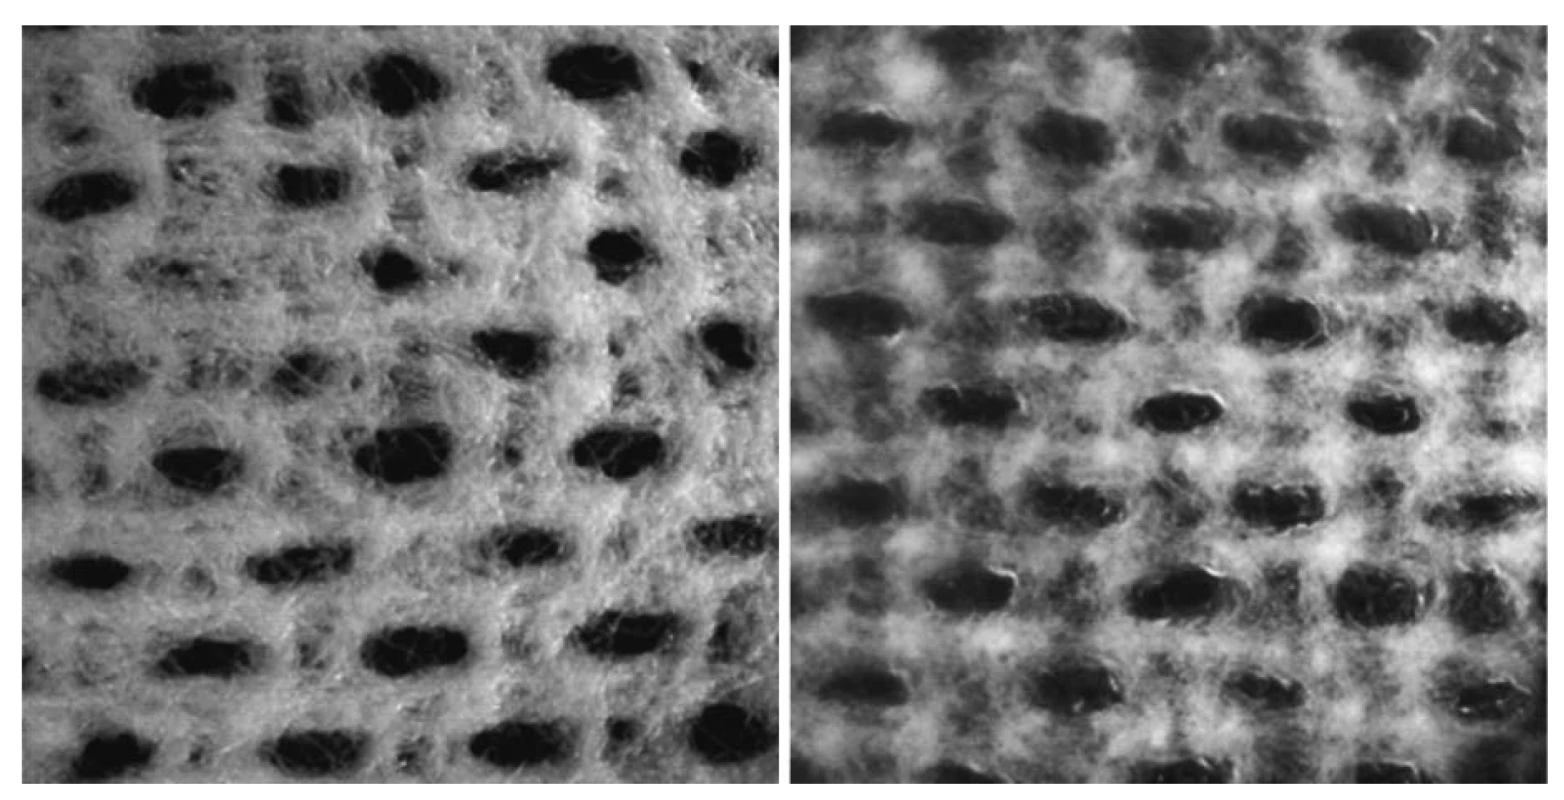 Mikroskopický vzhled krytí při 10násobném přiblížení (vlevo) – struktura krytí v suchém stavu,
vzhled krytí ve vlhkém stavu po 24 hodinách po umístění na umělý model rány (vpravo)